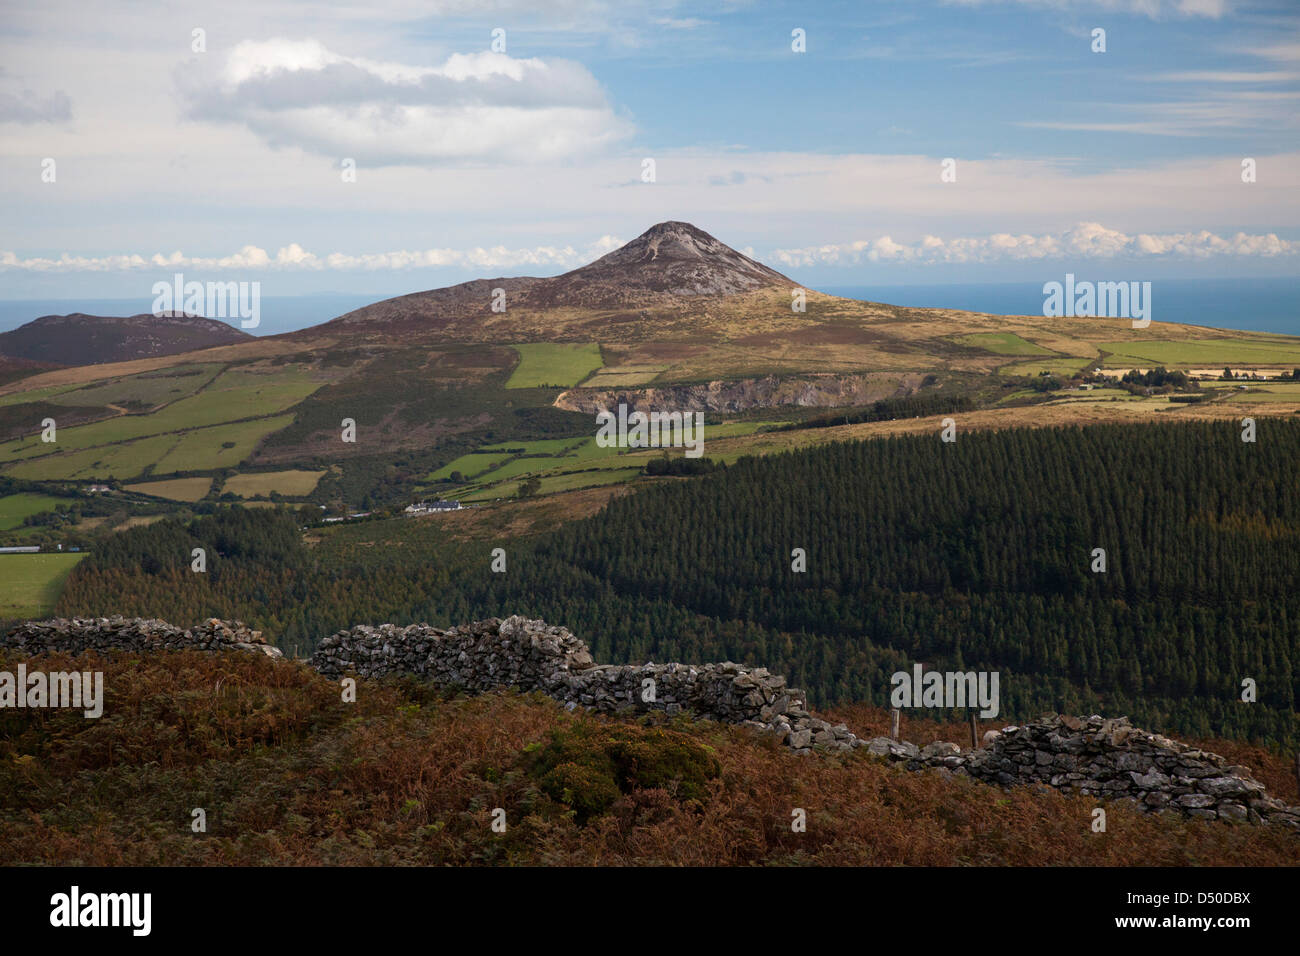 Große Zuckerhut gesehen von den Hängen des Mauilin, County Wicklow, Ireland. Stockfoto